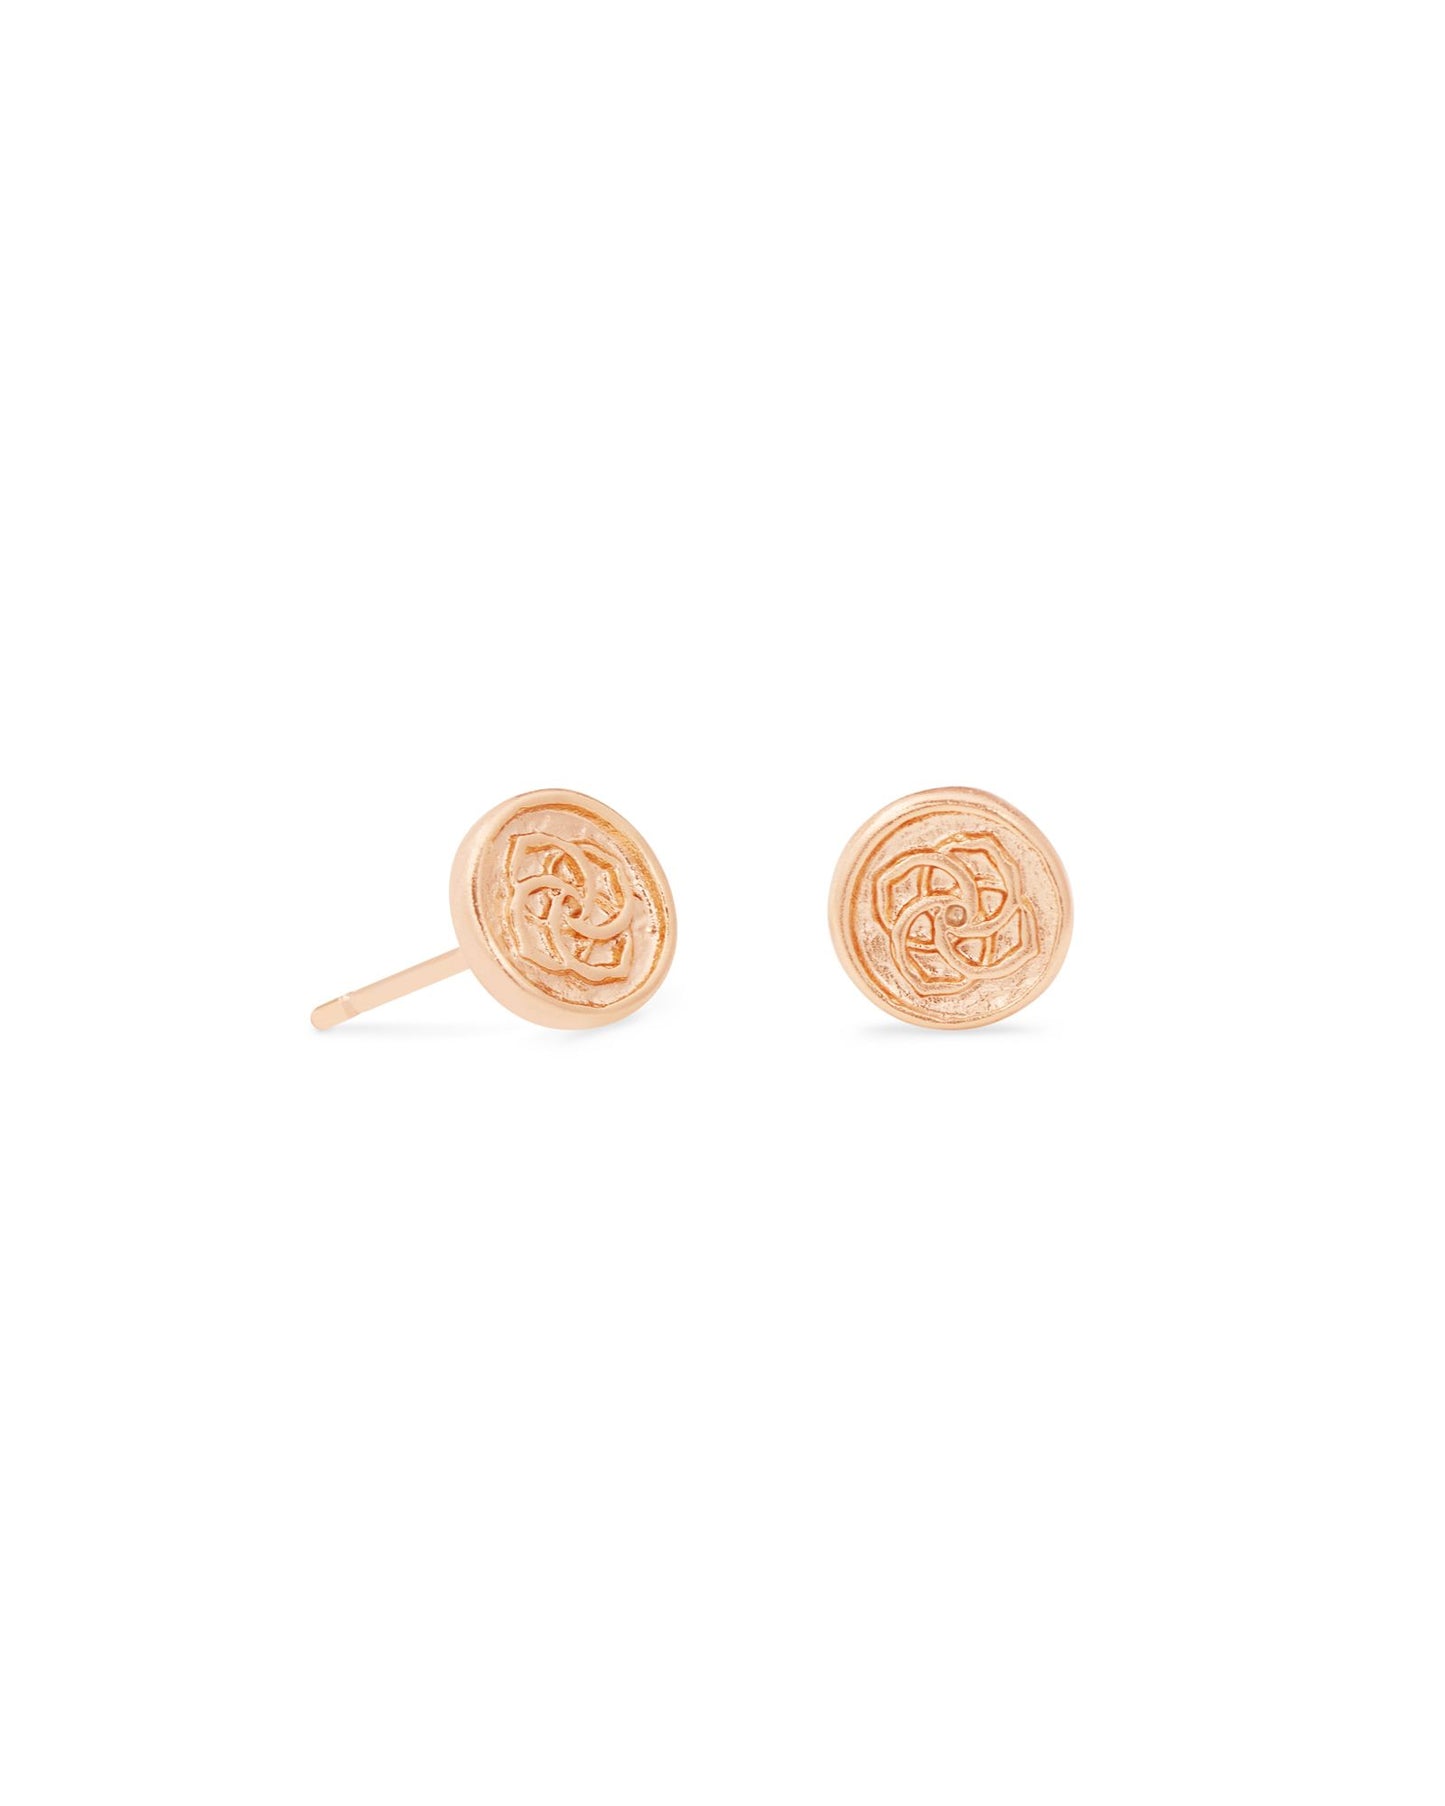 Kendra Scott Dira Coin Stud Earrings - Rose Gold Metal